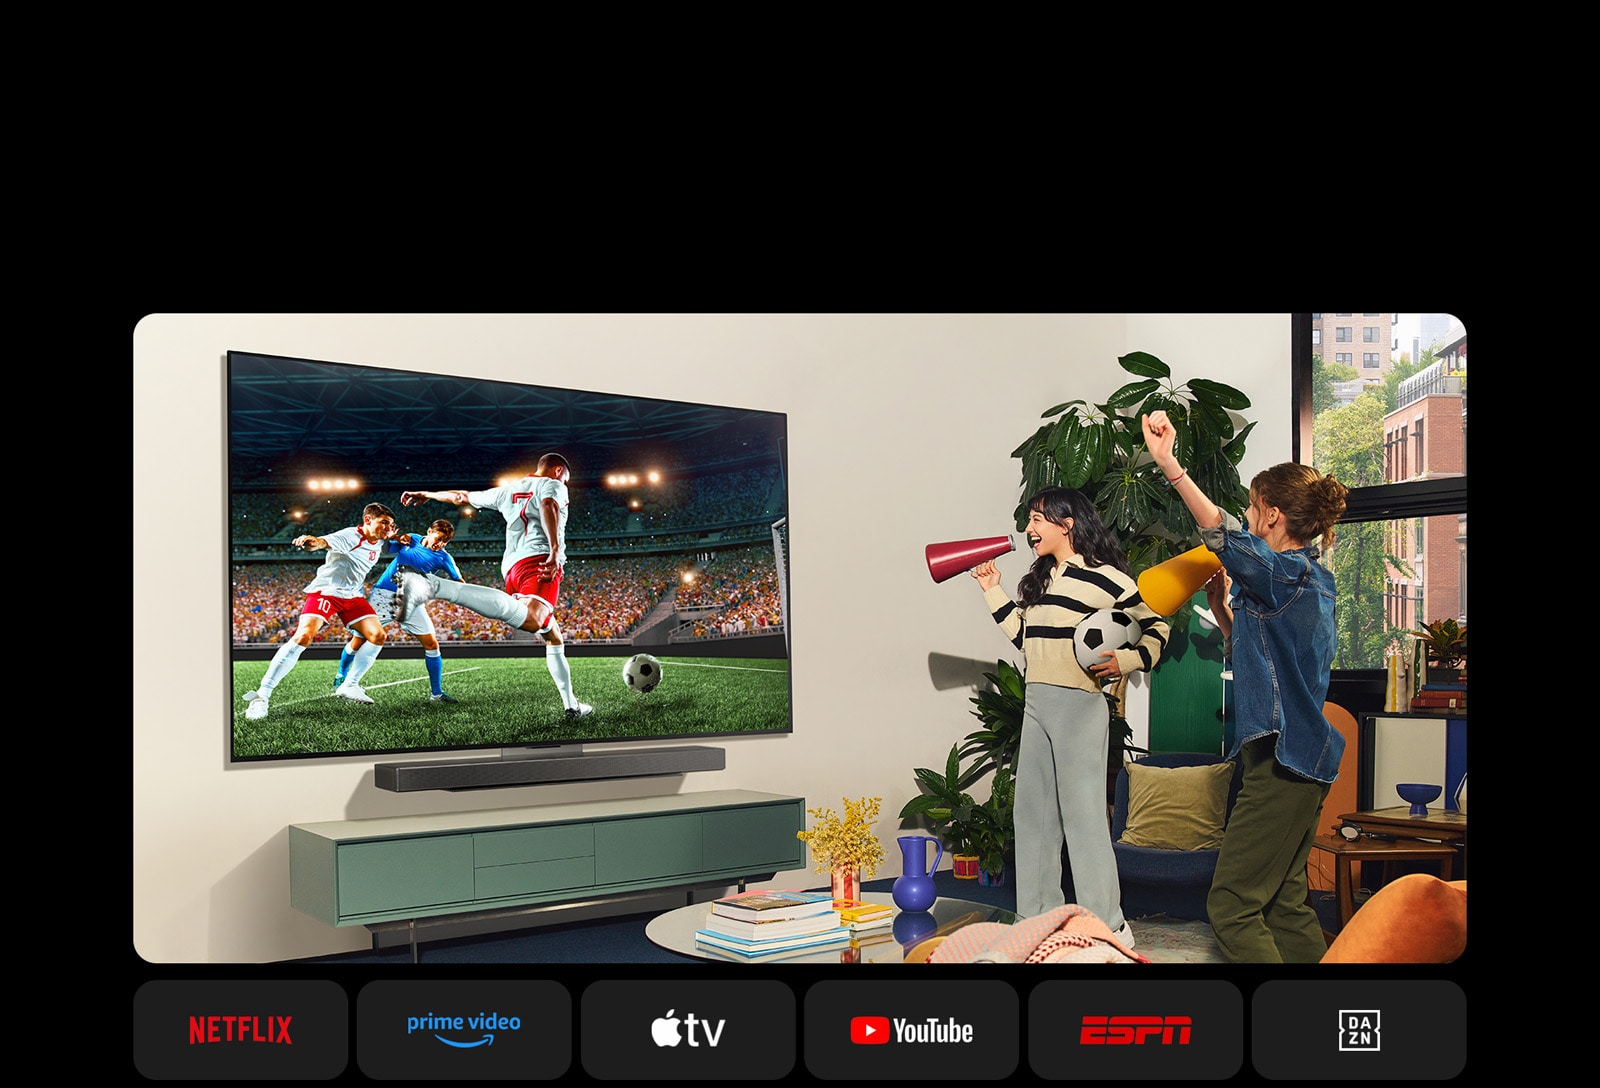 Două femei se uită la un meci de fotbal într-un spațiu de locuit confortabil. O femeie ține o minge de fotbal și ambele își susțin echipa cu portavoci galbene și roșii. Sunt prezentate mai jos următoarele logo-uri. Netflix, Amazon Prime Video, Apple TV, Youtube, ESPN și DAZN.